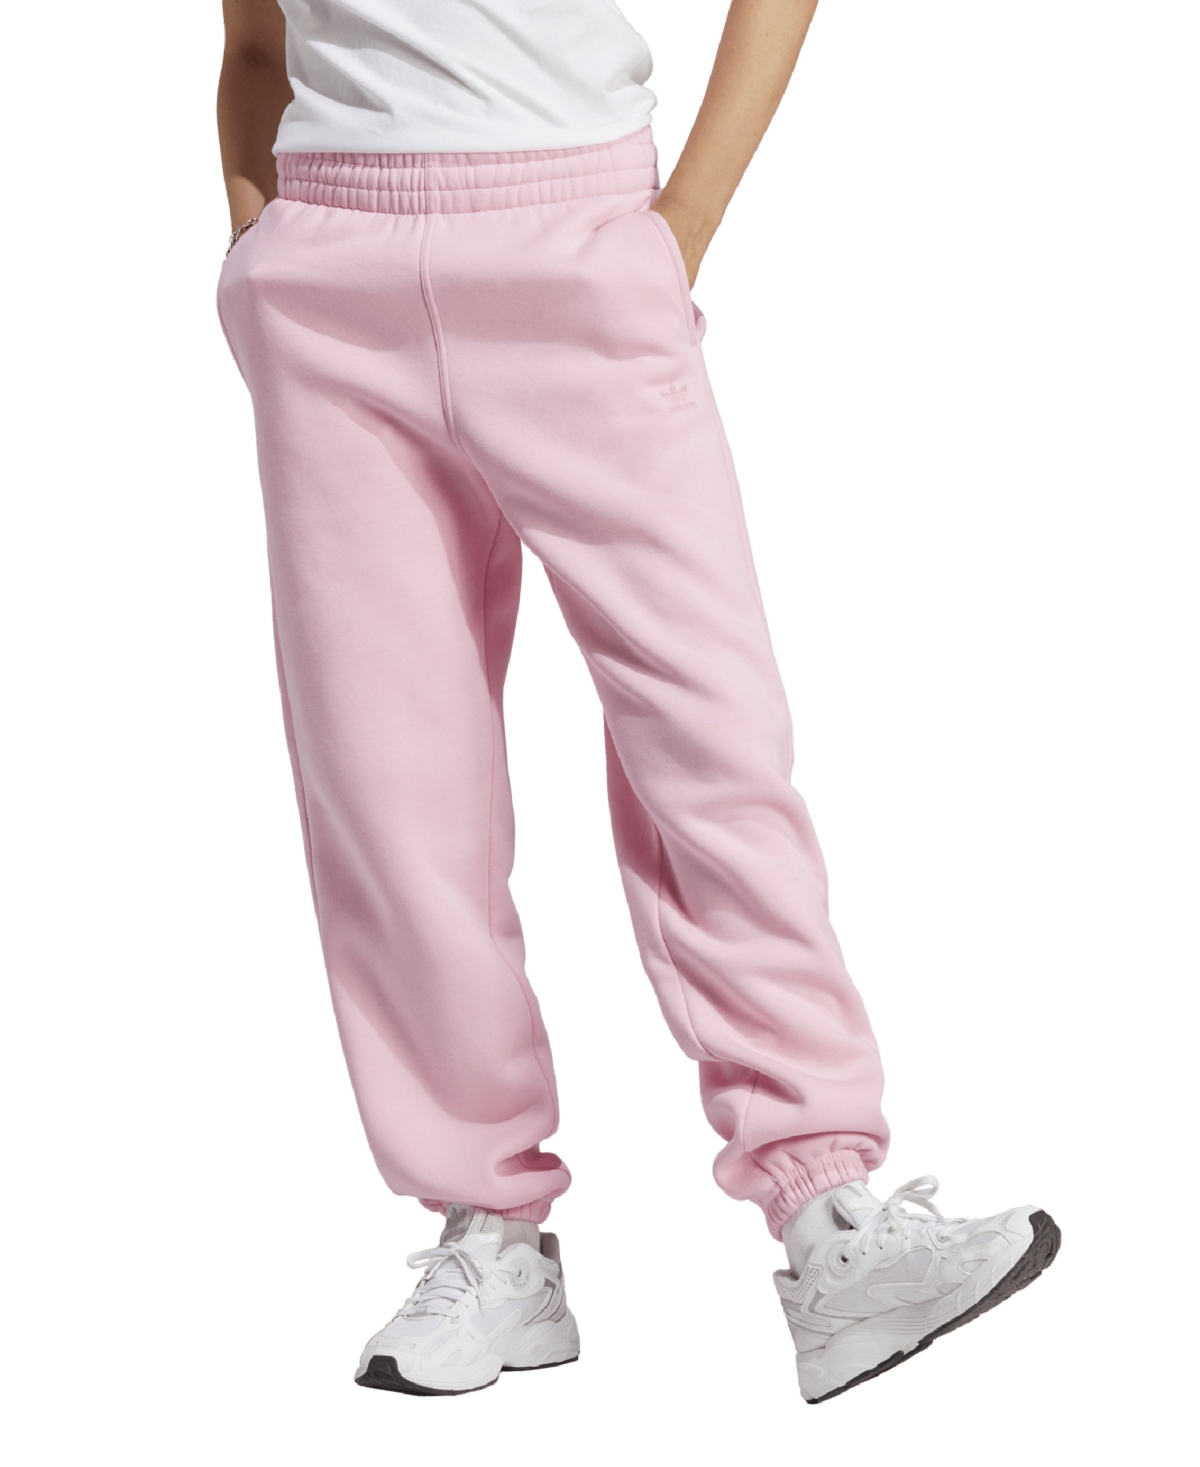 Adidas Originals Essentials Fleece In True Pink | ModeSens